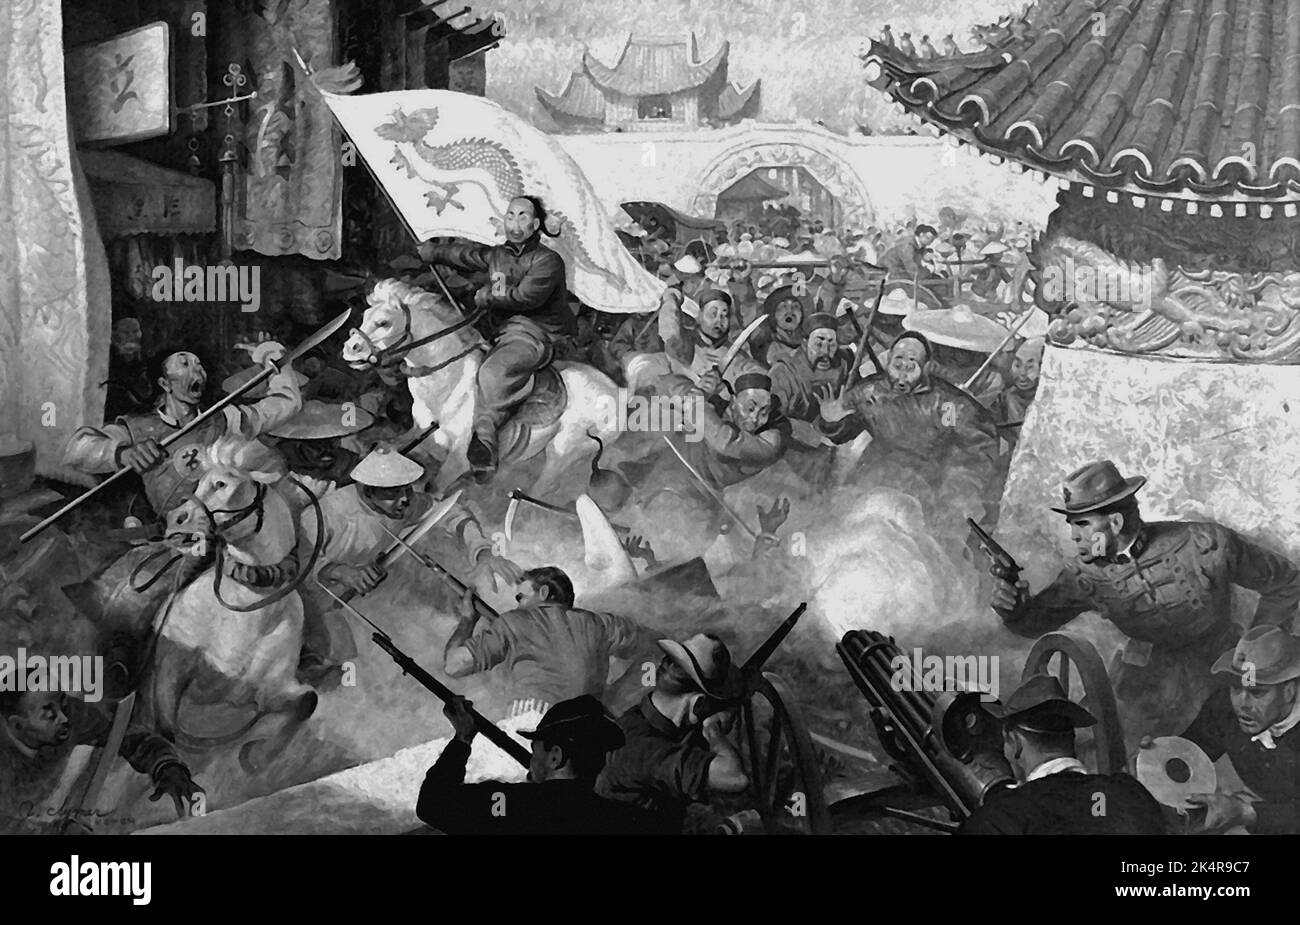 PEKING, CHINE - 1900 - Illustration illustrant les Marines américains qui combattent les boxers rebelles en dehors de la Ligue de Pékin, 1900. Peinture par John Clymer - Banque D'Images